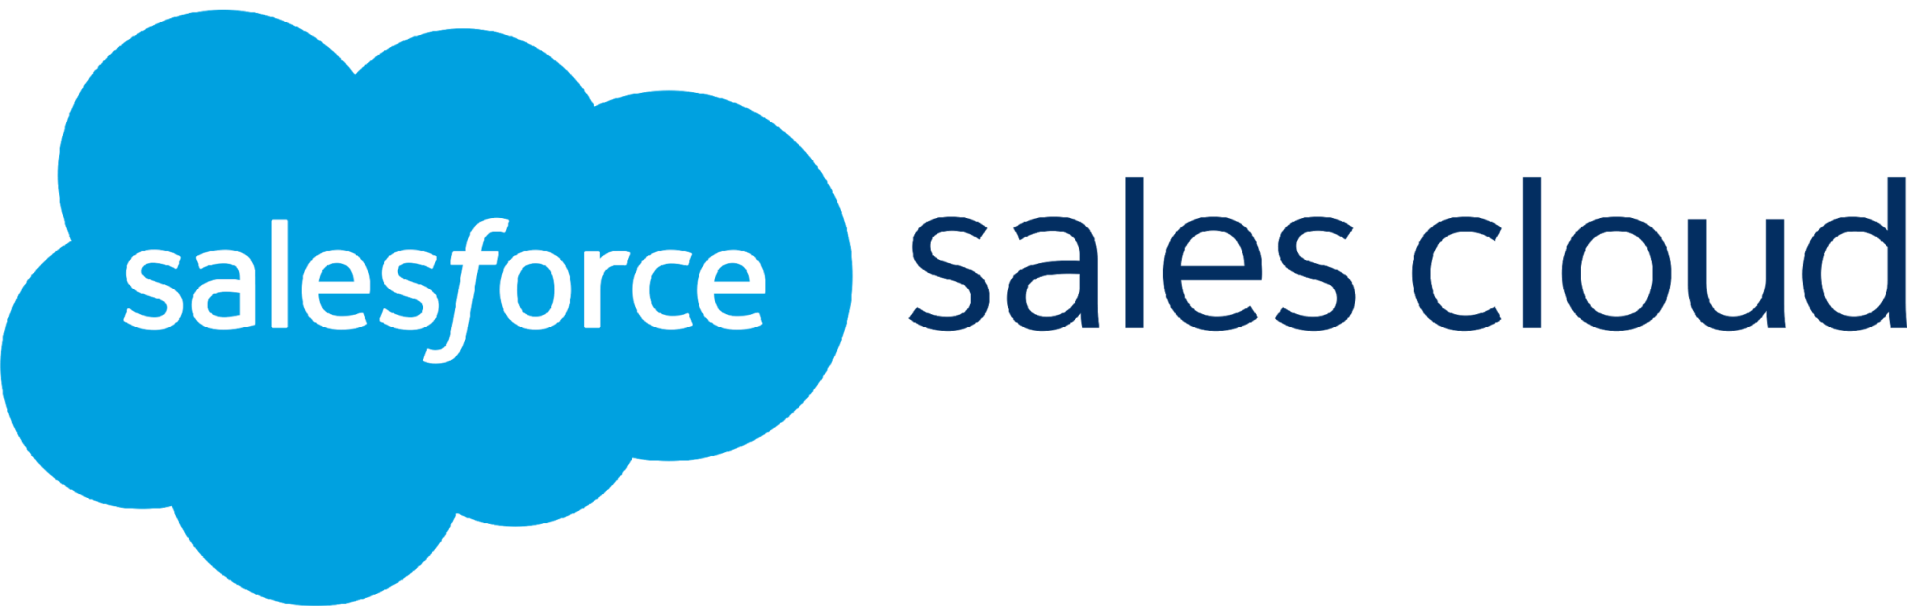 veeva vs salesforce, veeva crm vs salesforce crm, veeva salesforce, salesforce health cloud vs veeva, veeva and salesforce, veeva vs salesforce for pharma